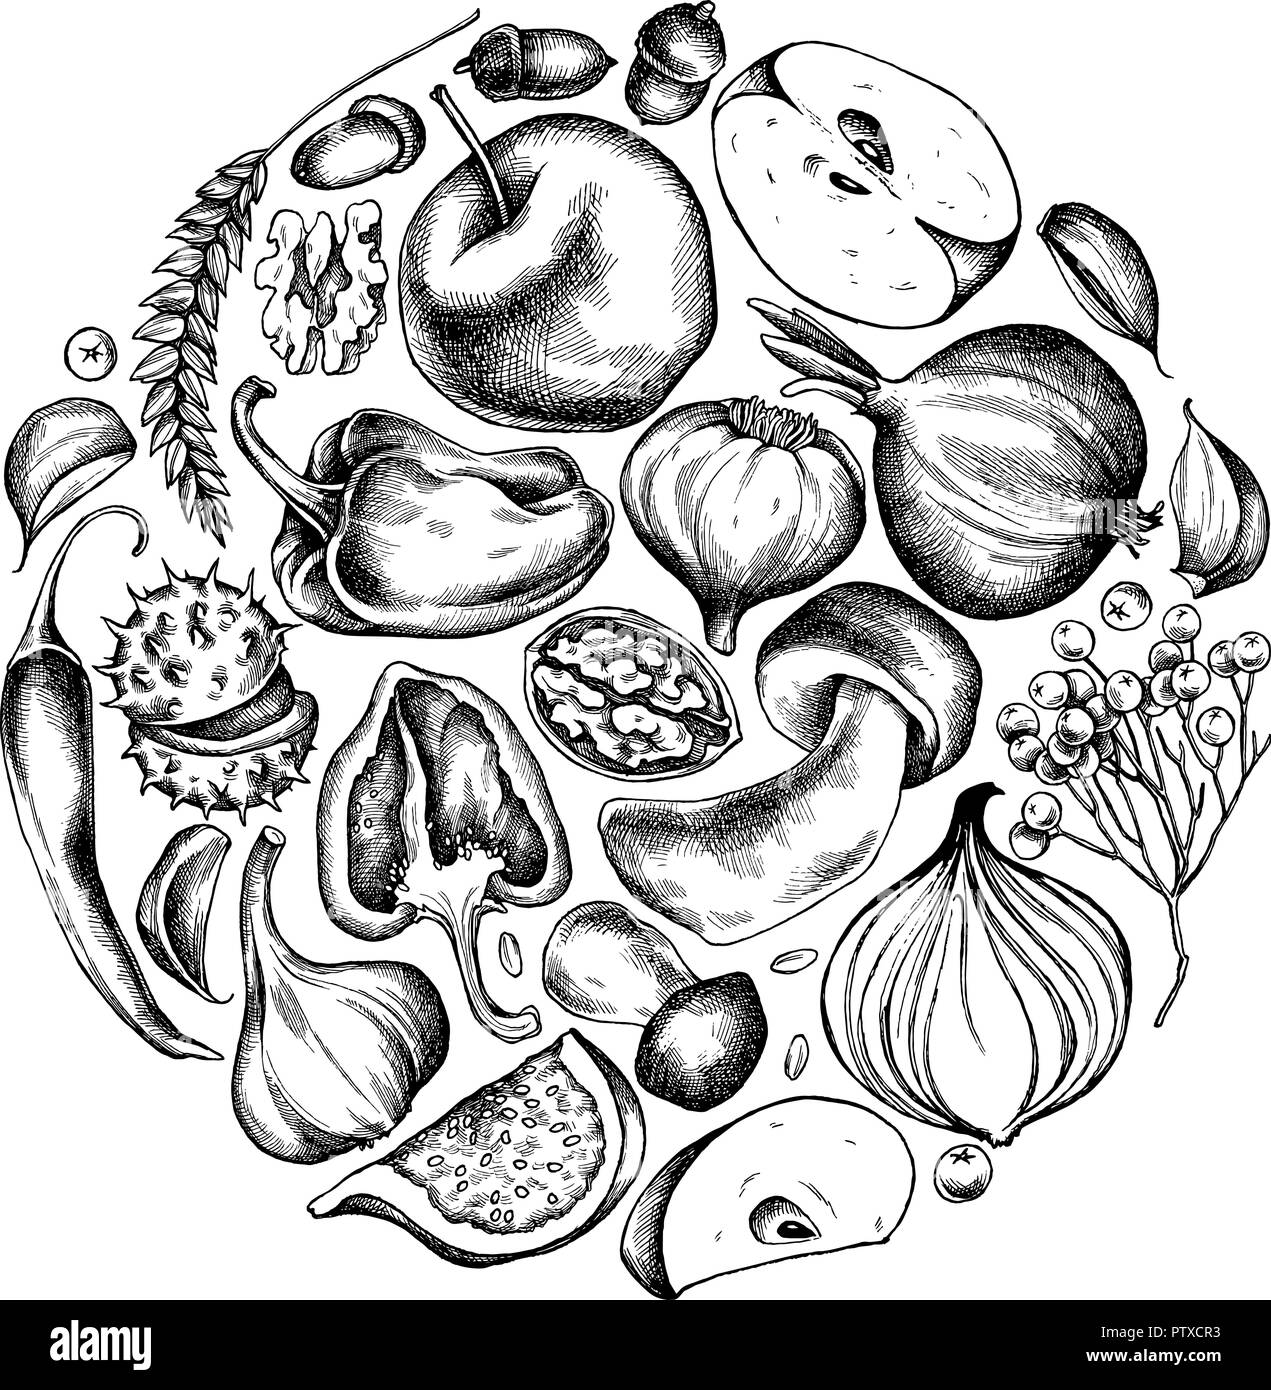 Vektor Sammlung von Hand gezeichneten Herbst Gemüse, runde Form Stock Vektor